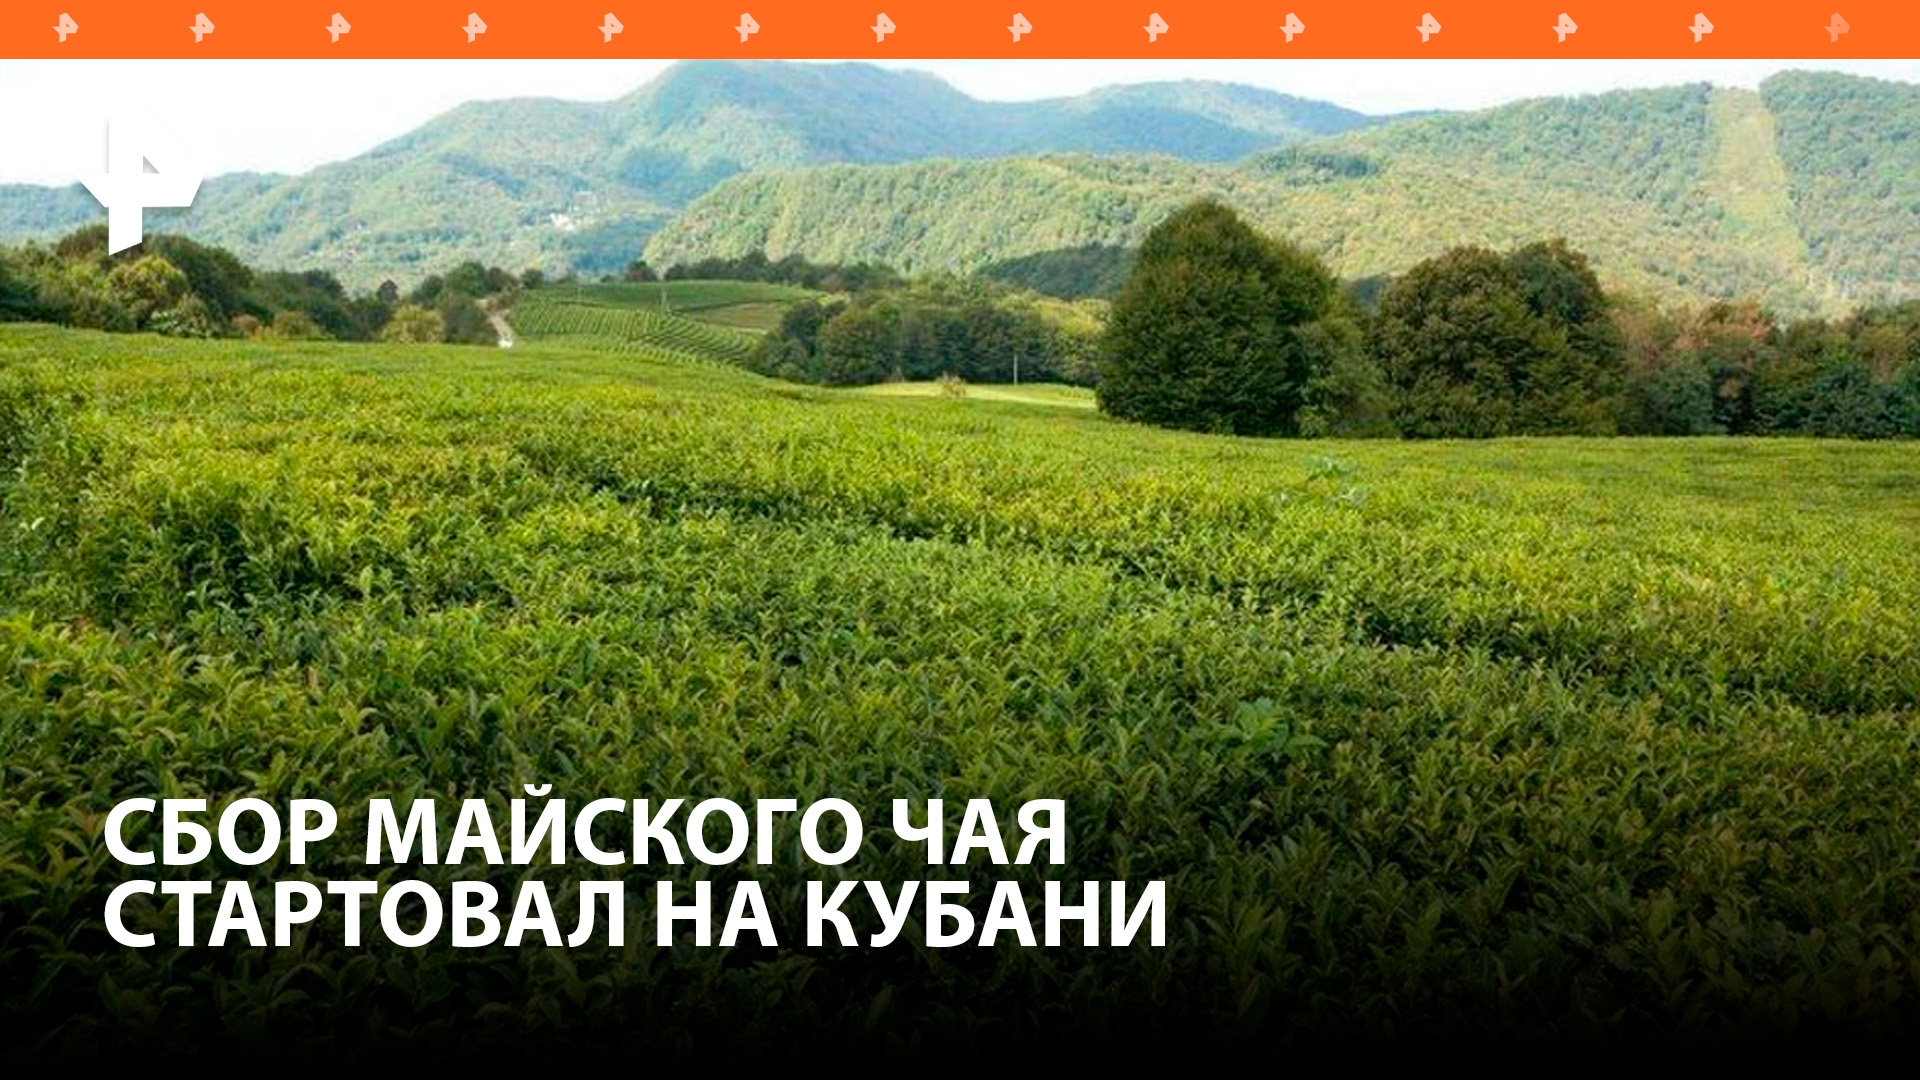 Сбор майского чая стартовал на Кубани: как производят напиток? / РЕН Новости